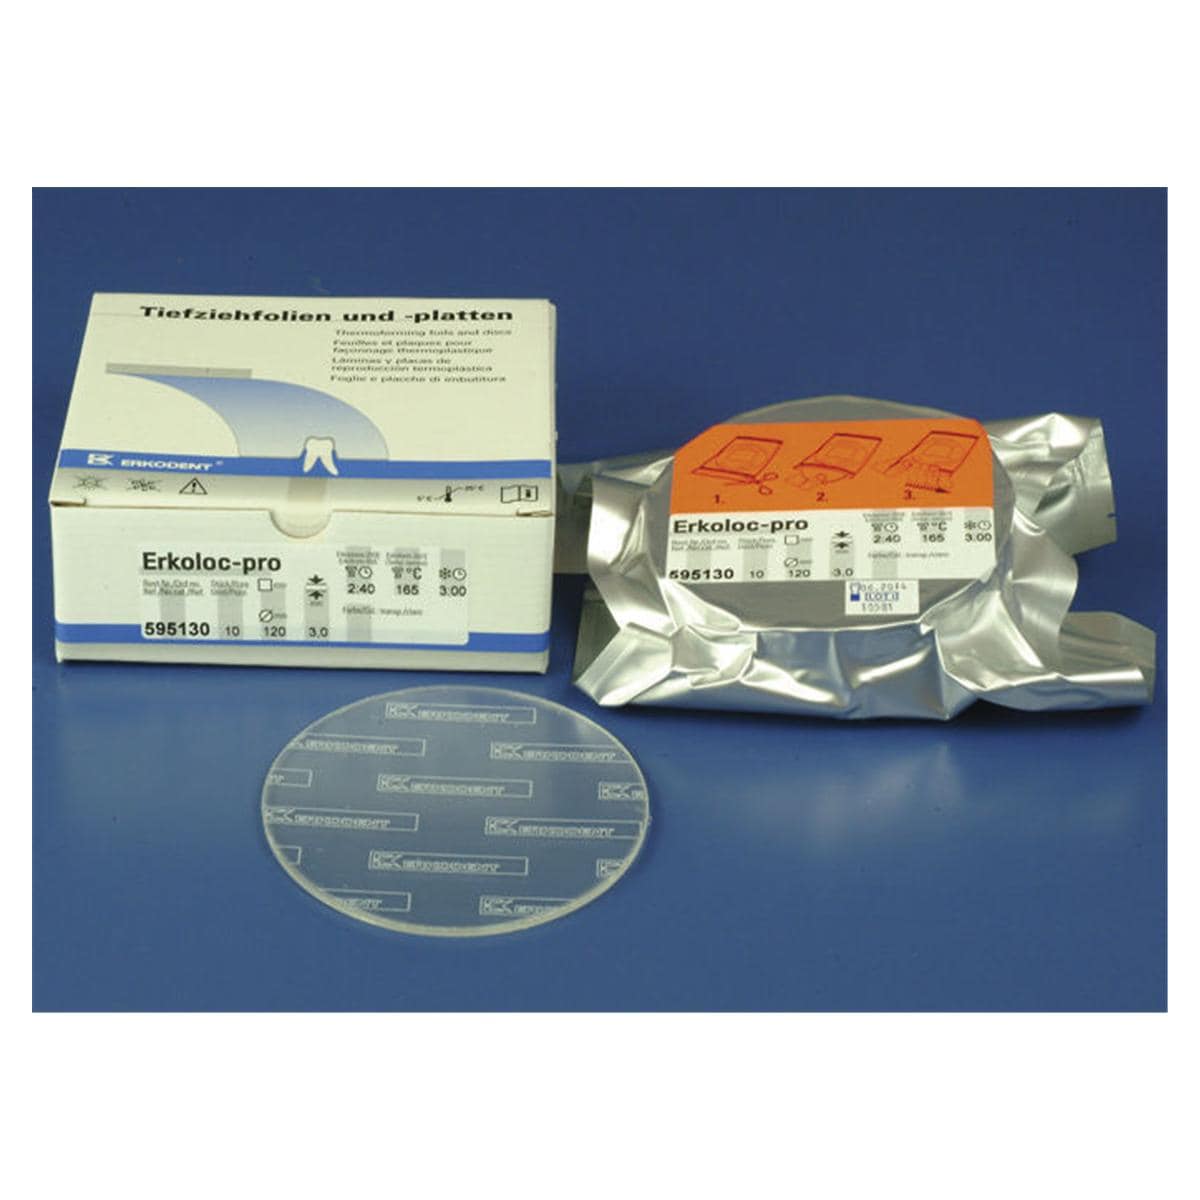 Erkoloc-pro transparant met isoleerfolie  120 mm - Dikte 3 mm, 10 stuks